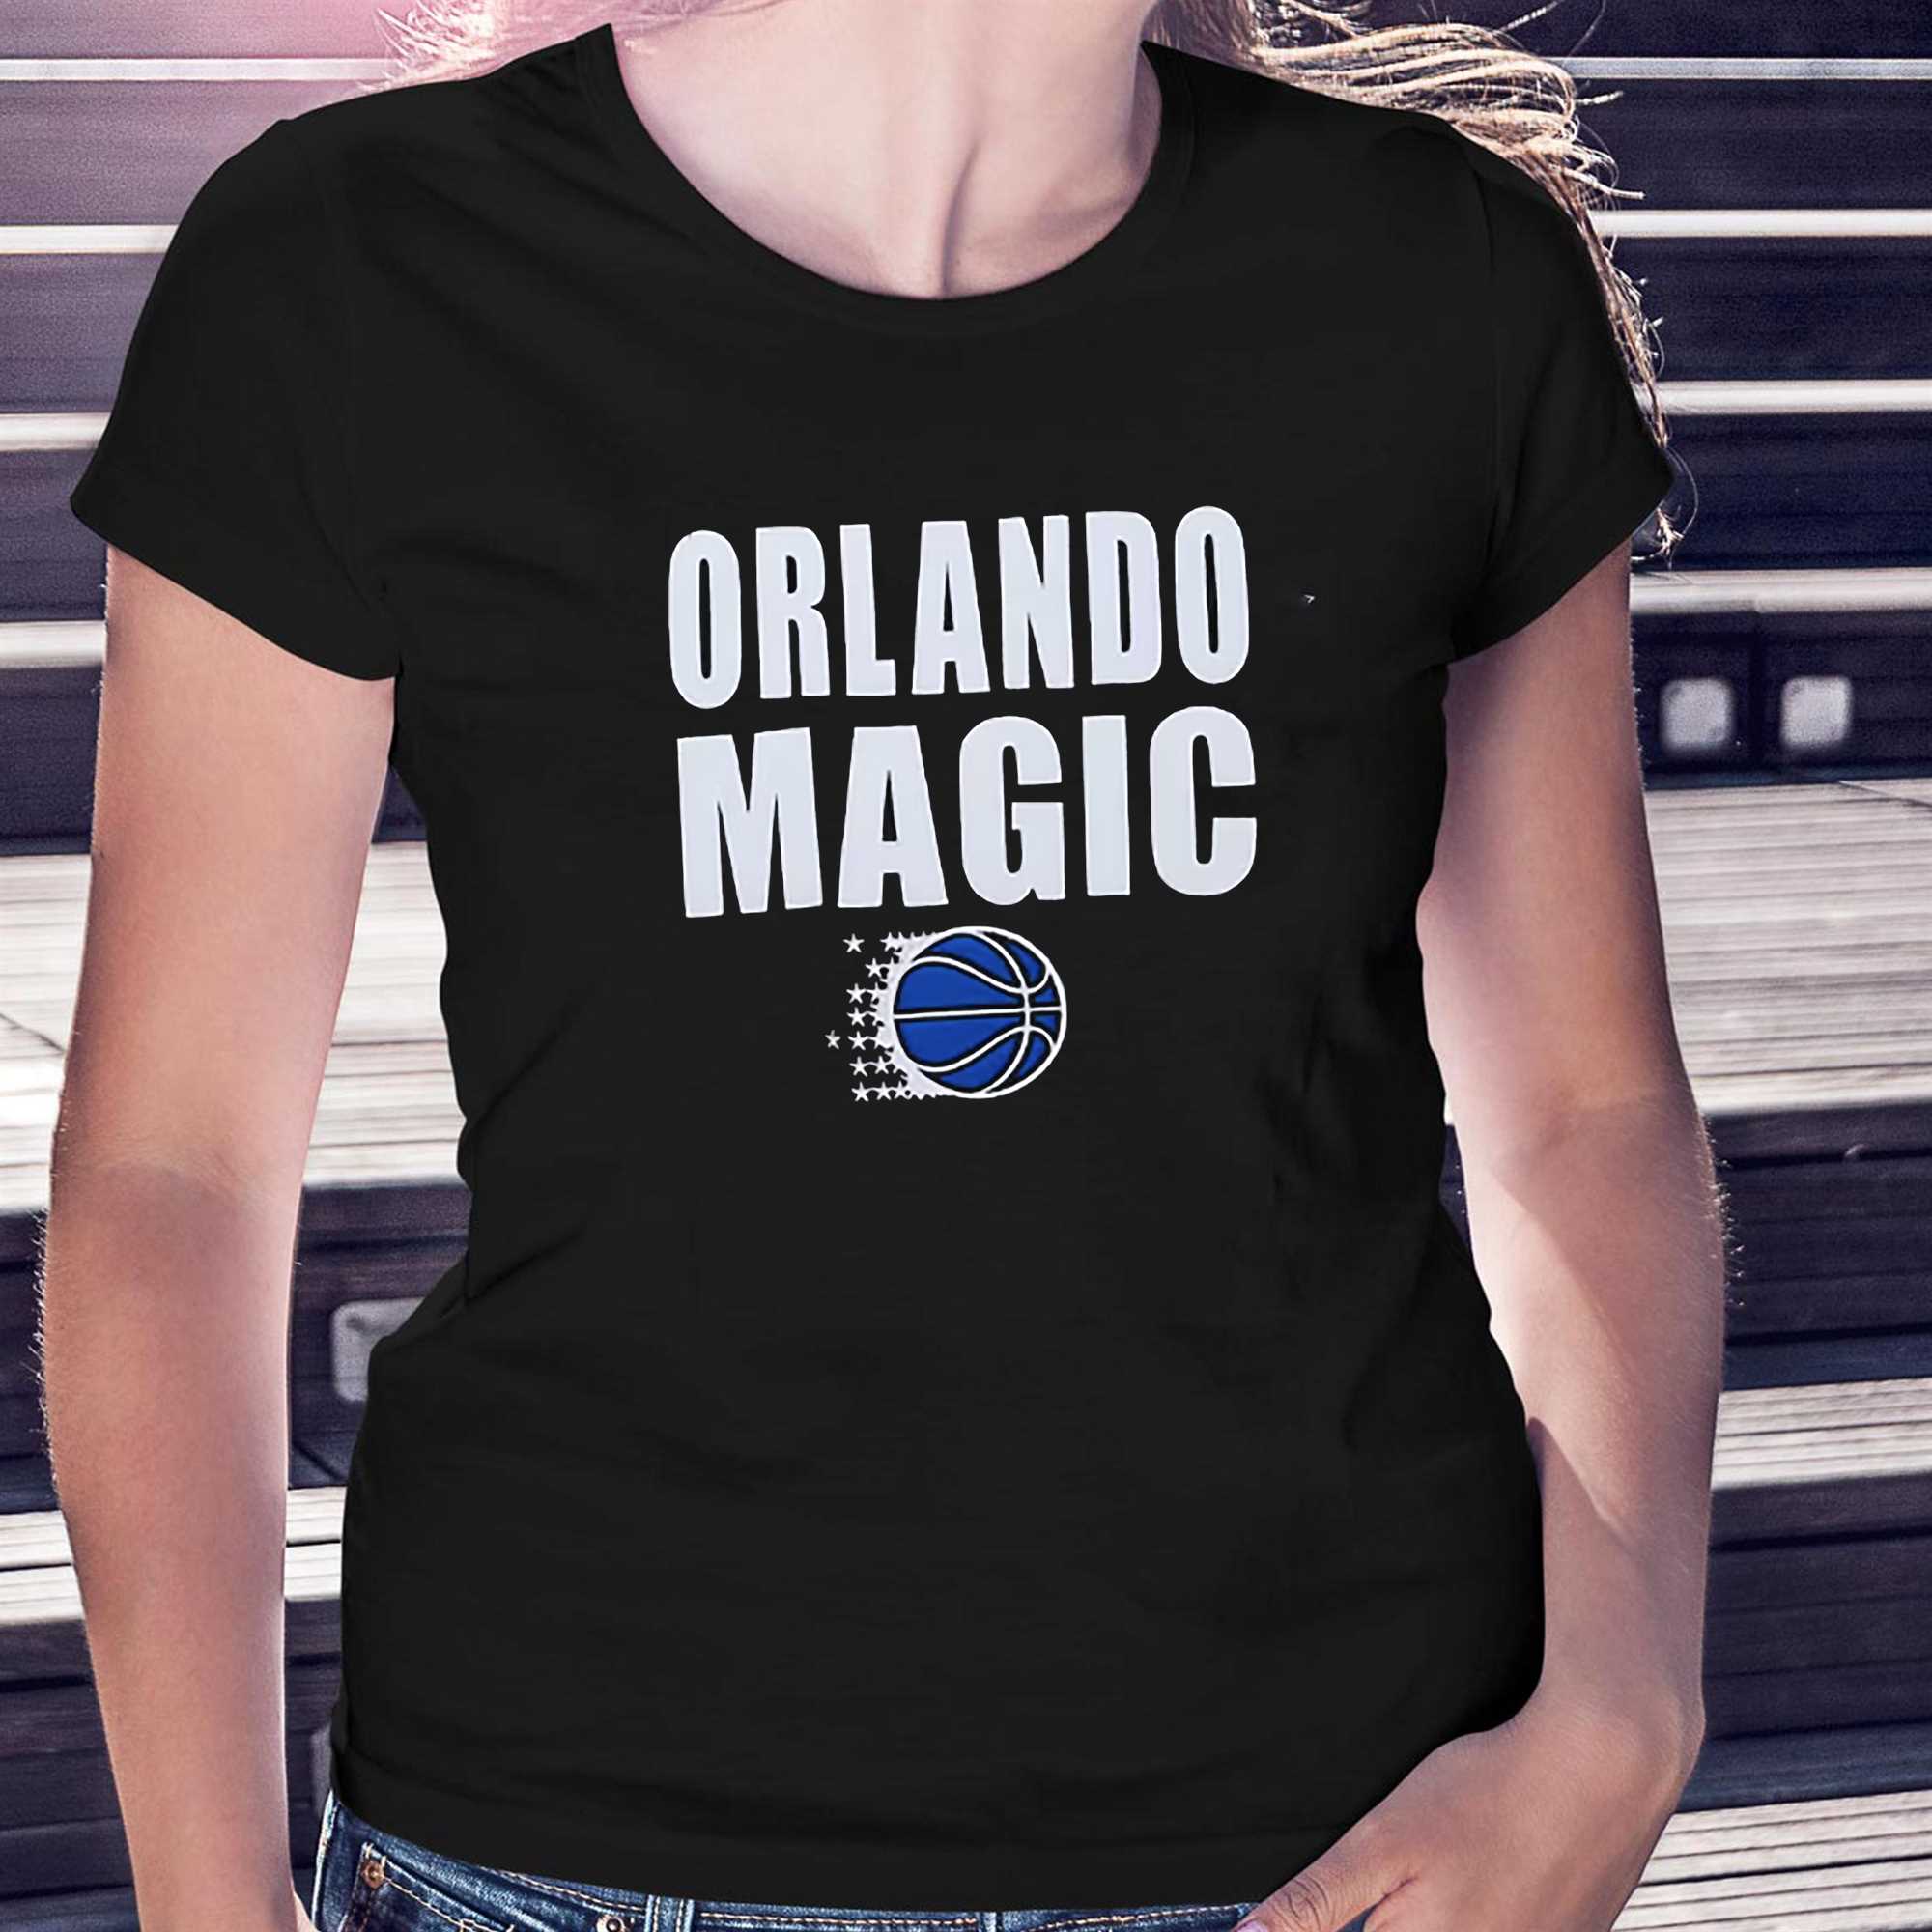 orlando magic clothes